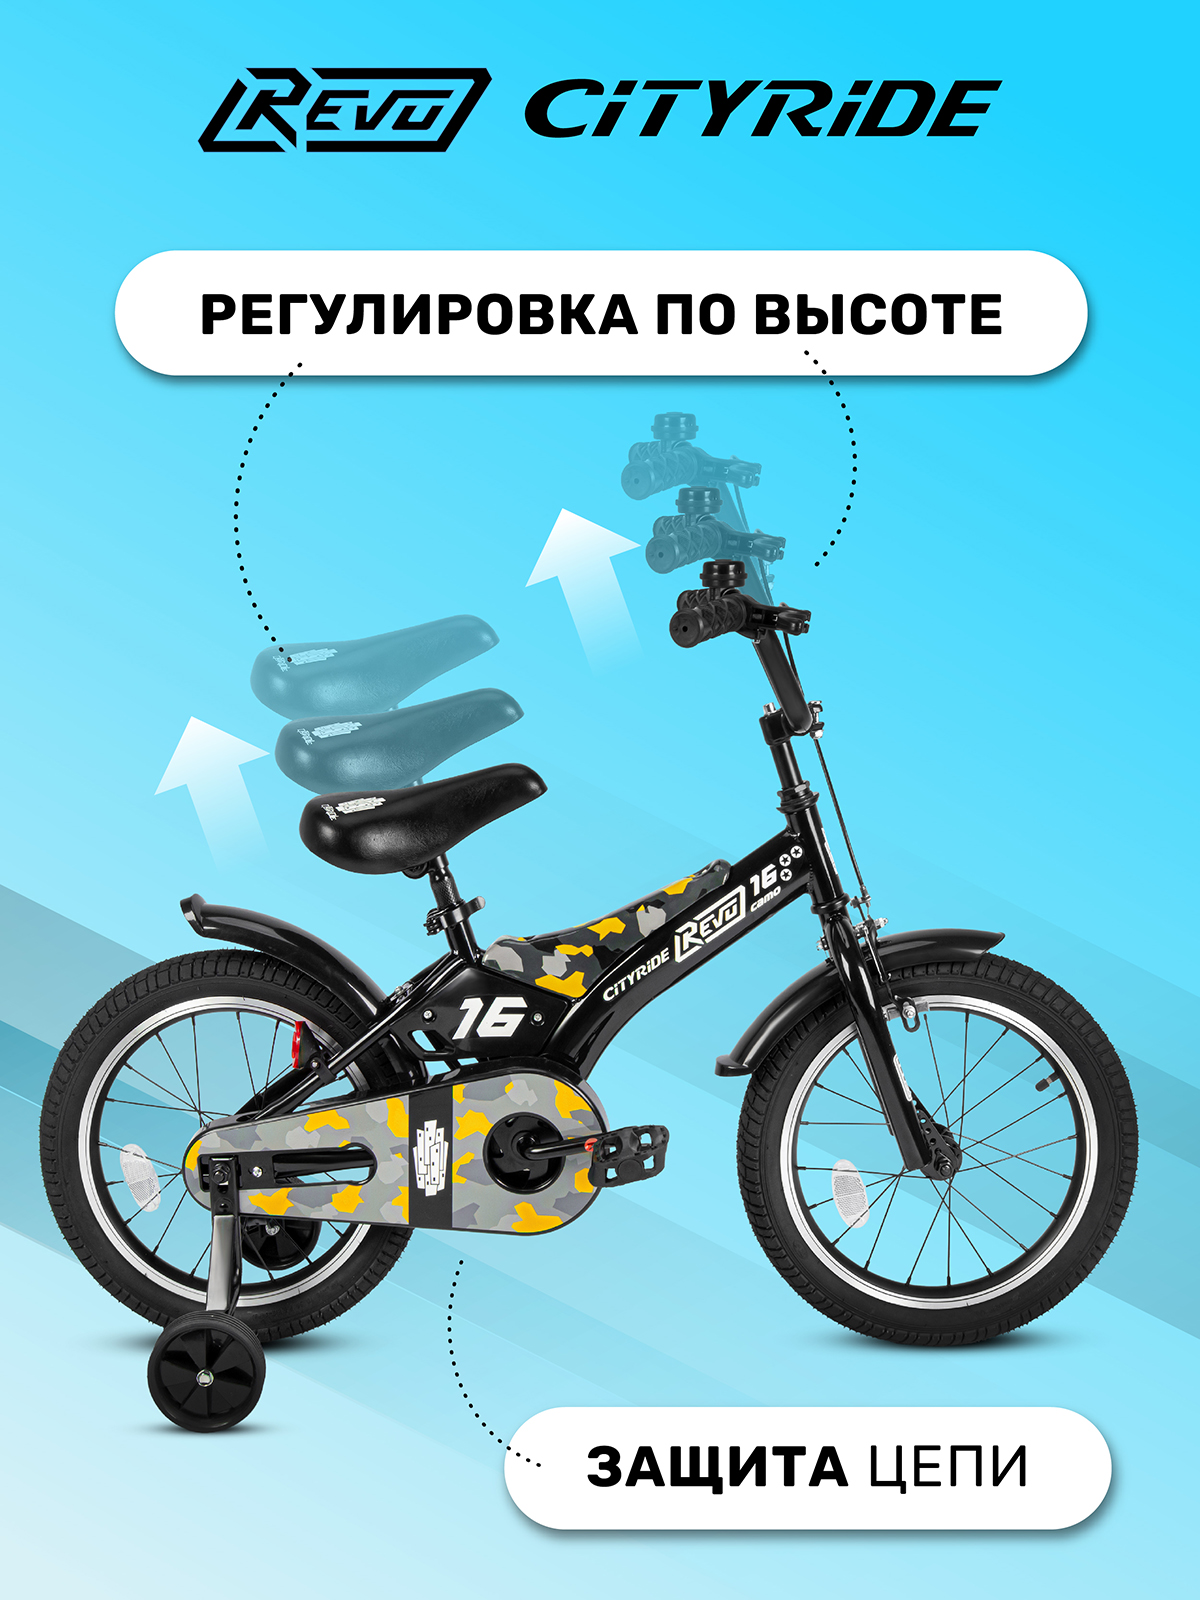 Велосипед детский двухколесный CITYRIDE Revo 16 желтый - фото 2